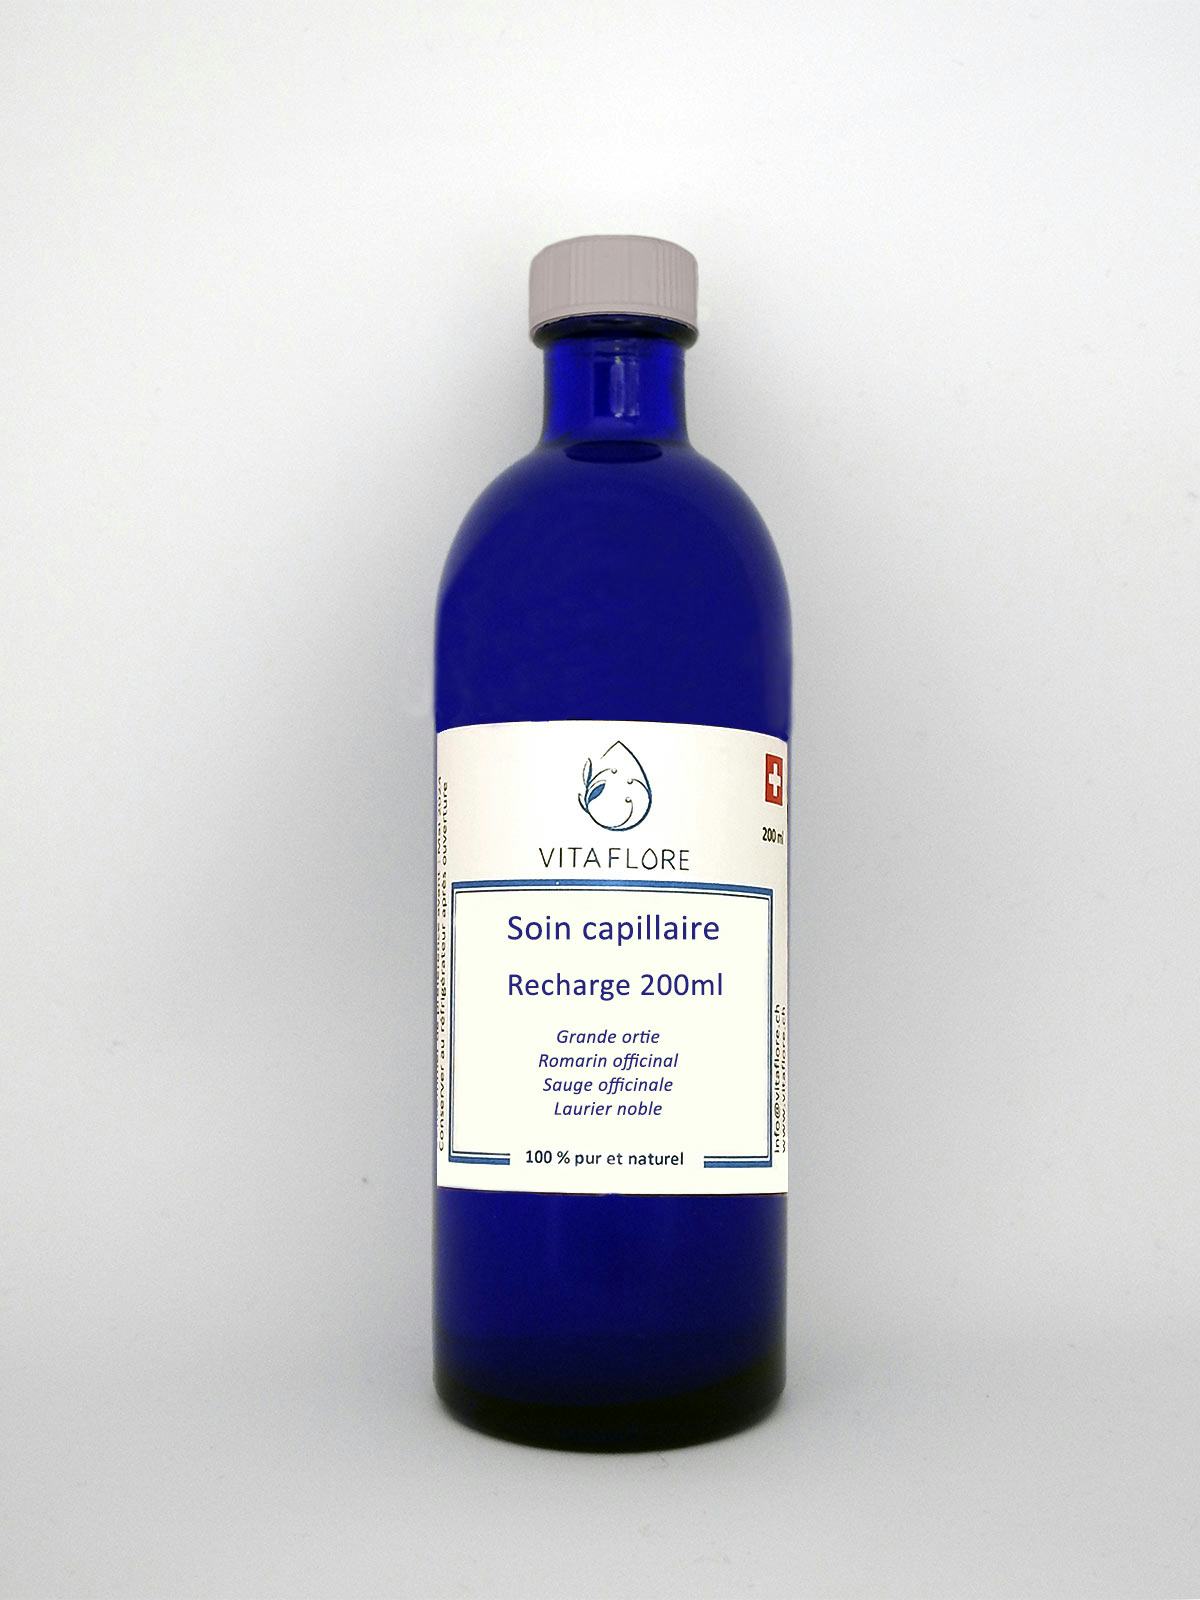 Synergie d’hydrolats – Soin capillaire – recharge 200ml, produit artisanal en vente directe en Suisse